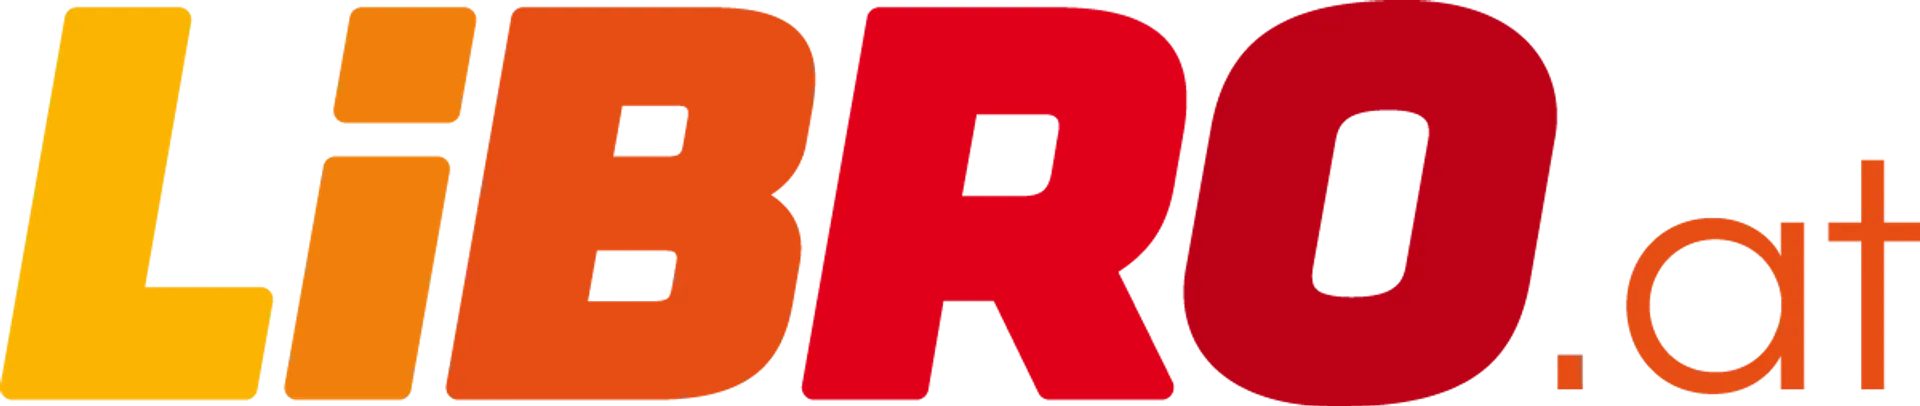 LIBRO logo die aktuell Flugblatt